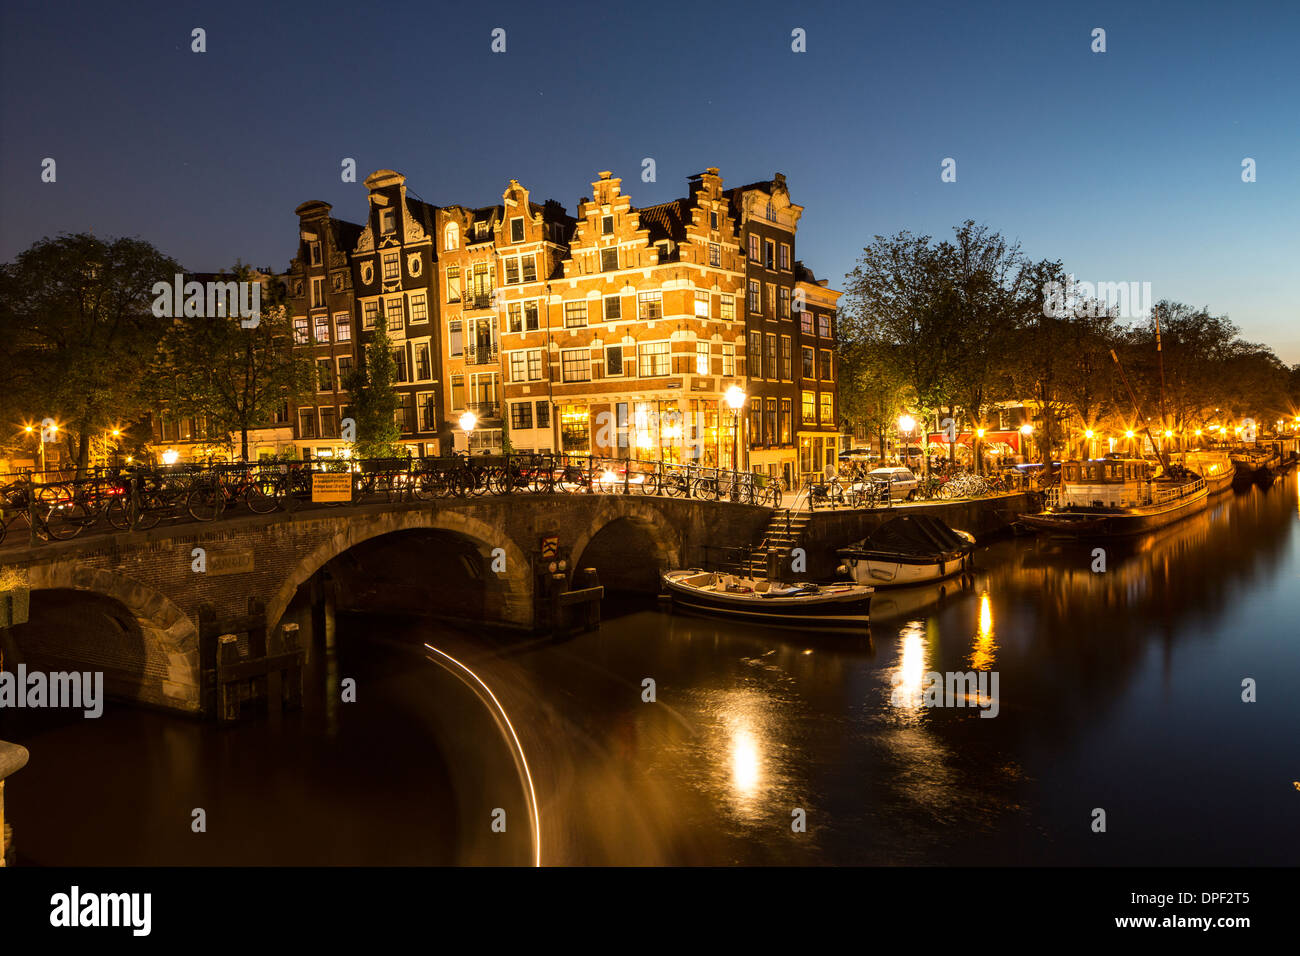 La nuit, les canaux Jordaan, Amsterdam, Pays-Bas Banque D'Images